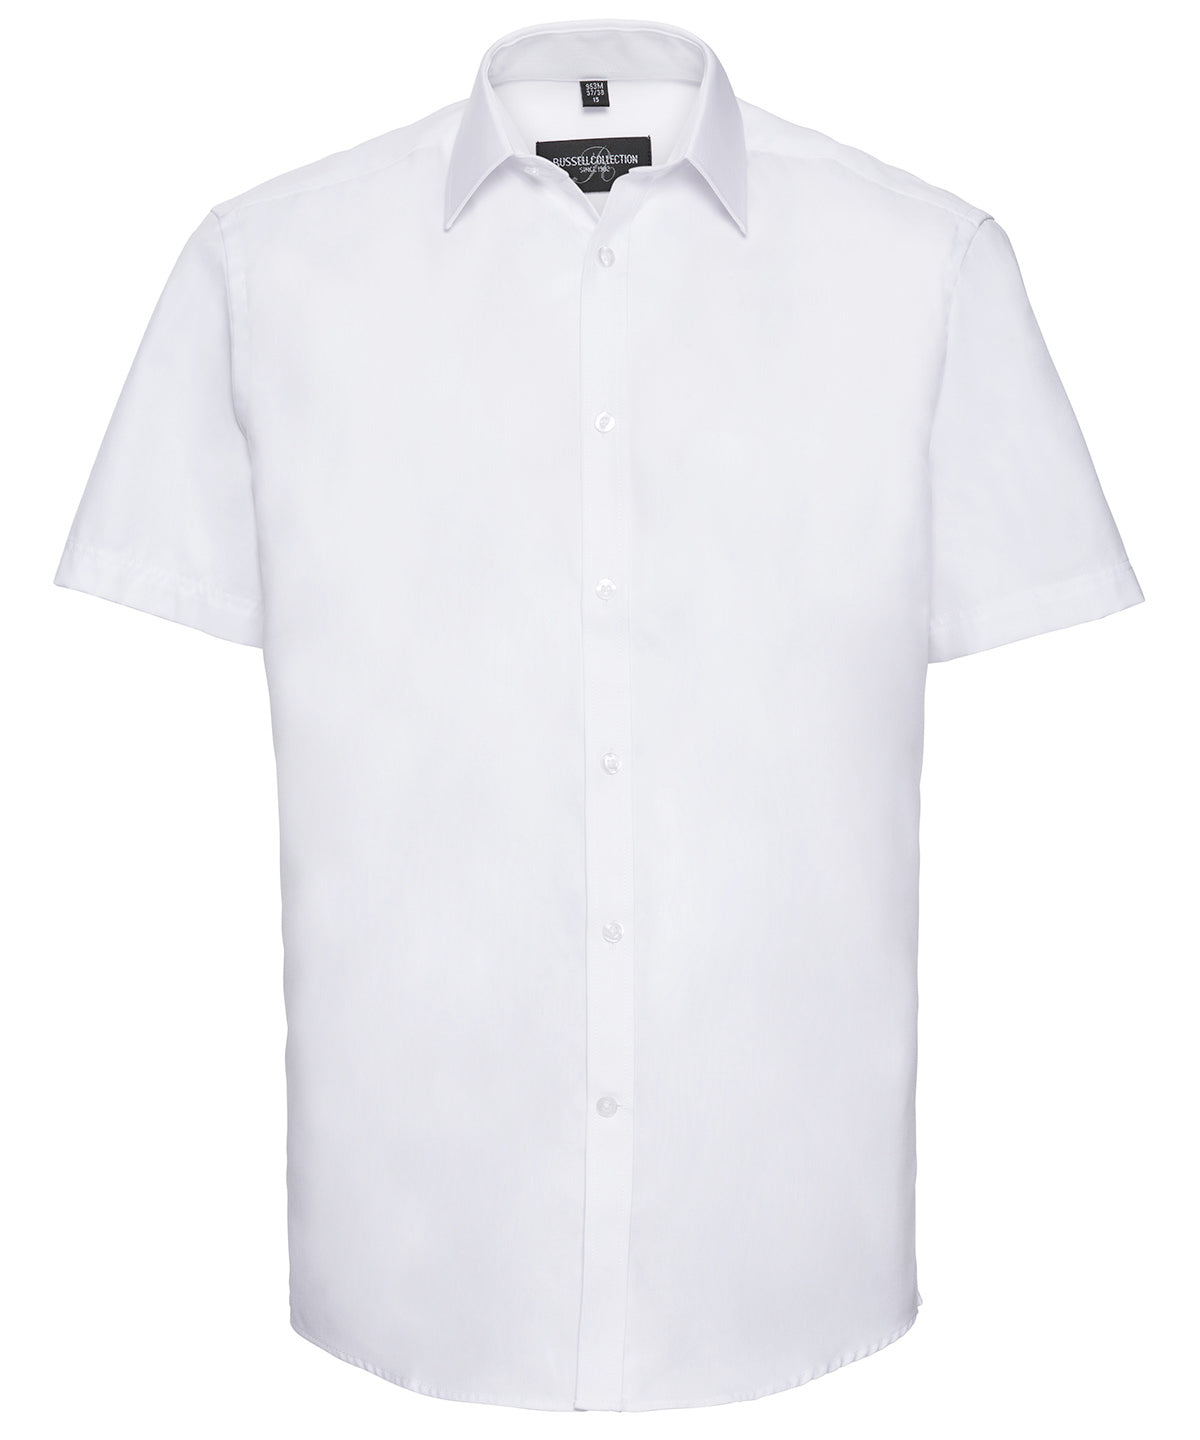 Bolir - Short Sleeve Herringbone Shirt